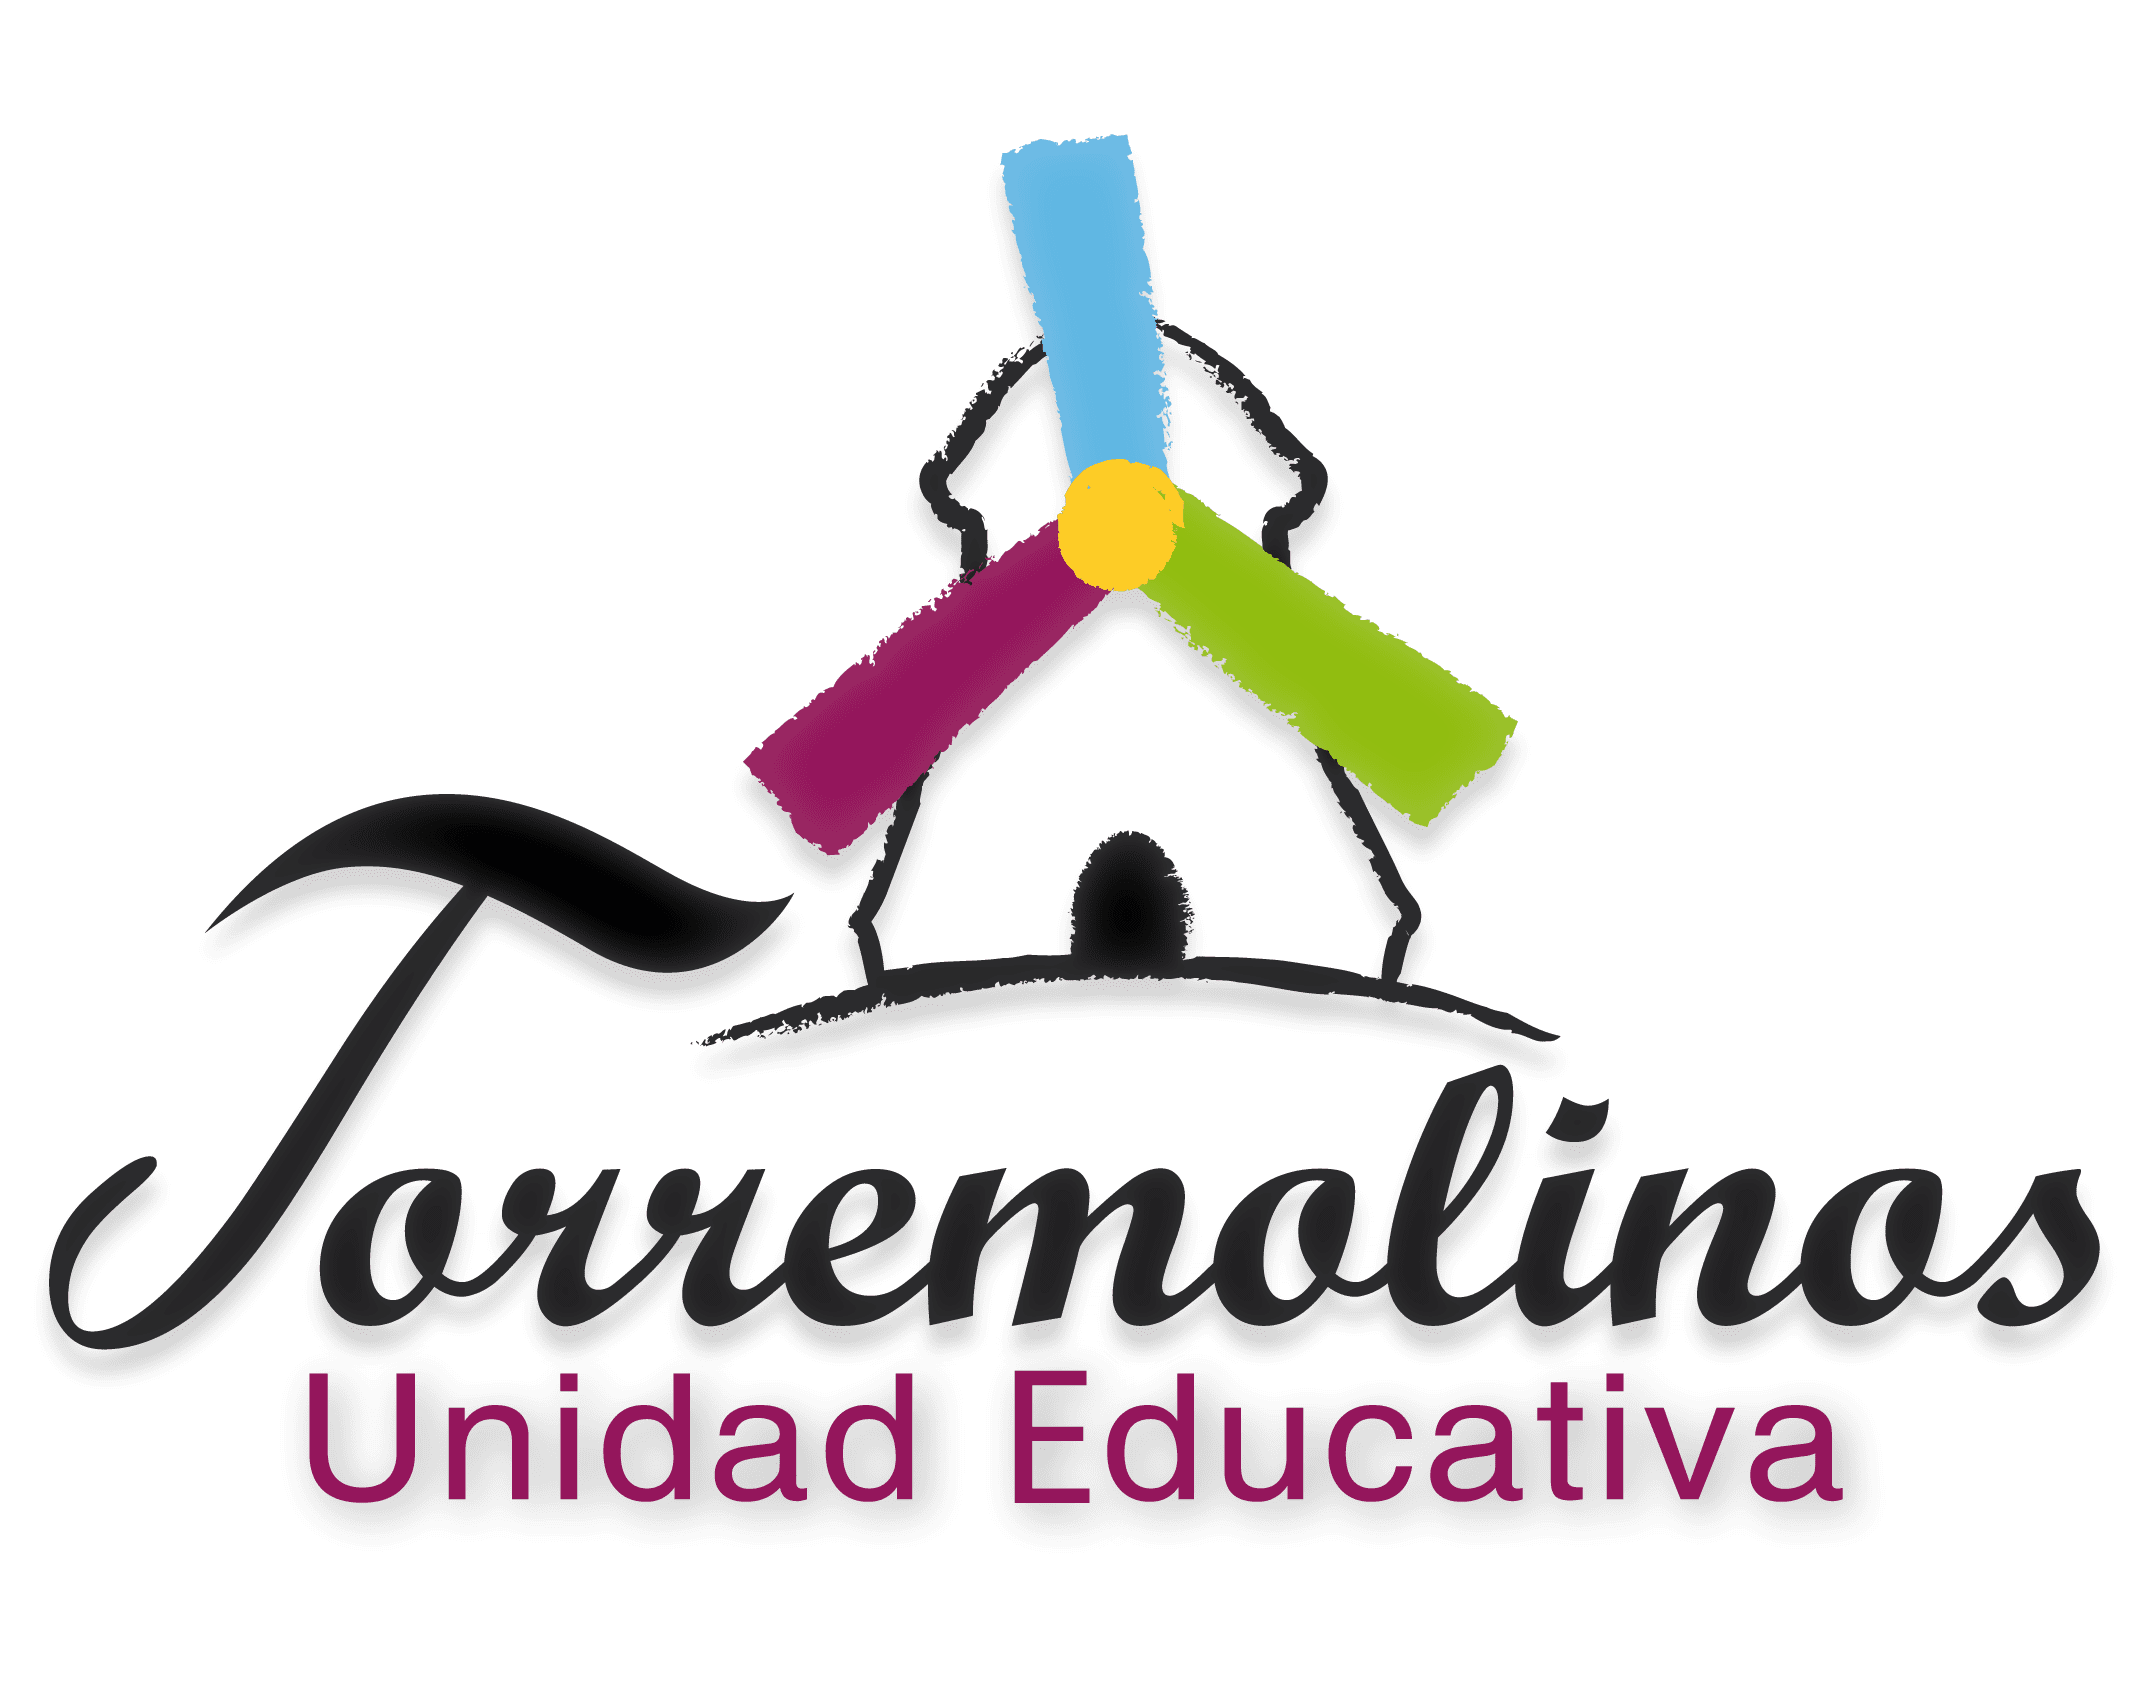 Unidad Educativa Torremolinos